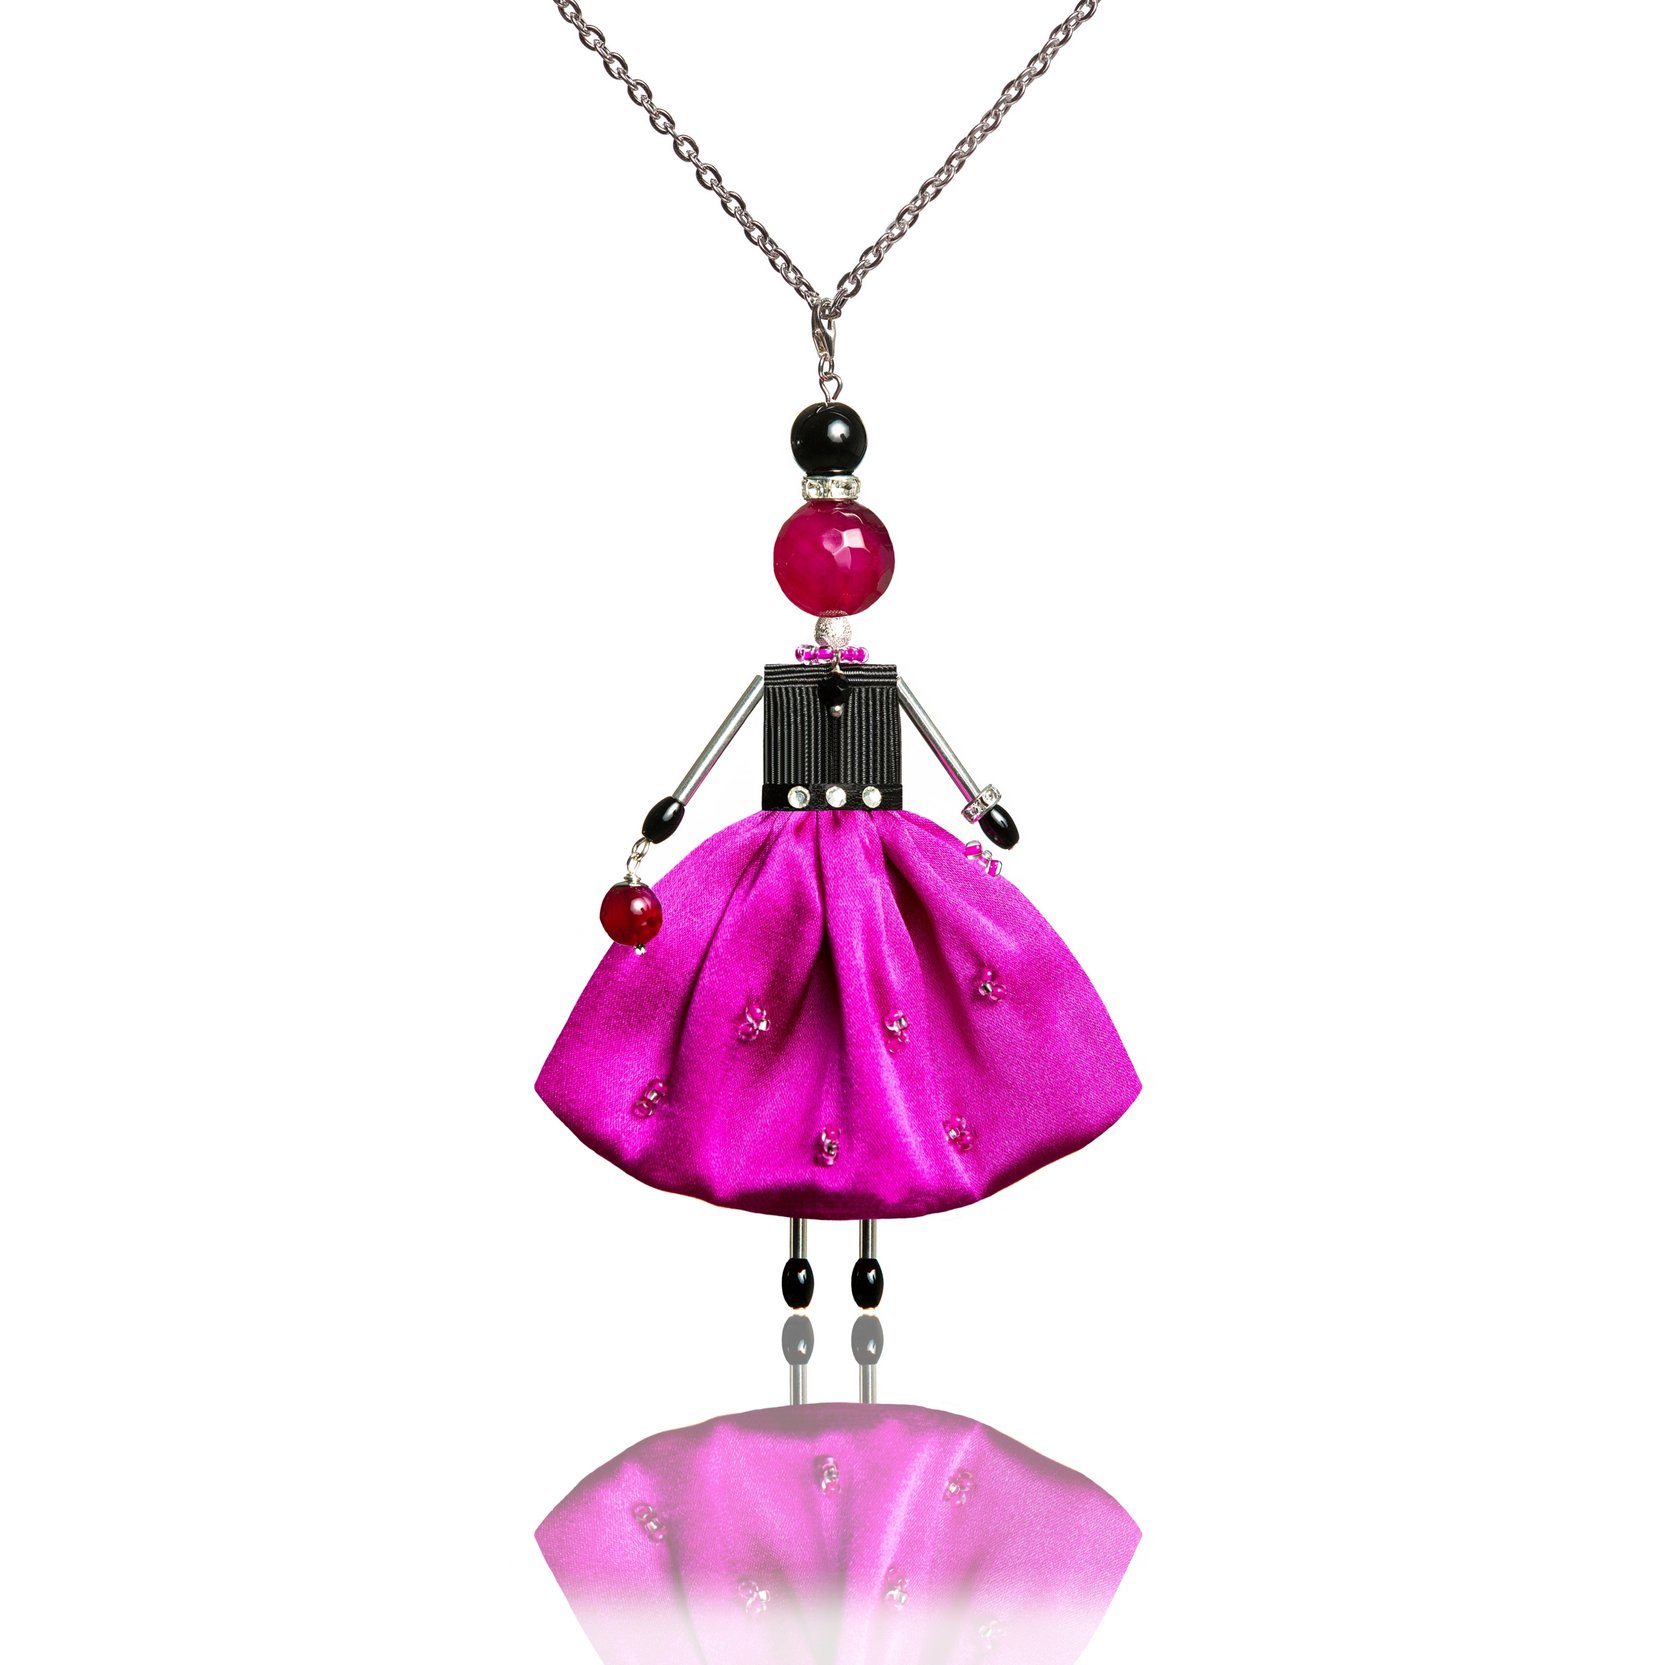 Unique doll-pendant in bright pink fuchsia